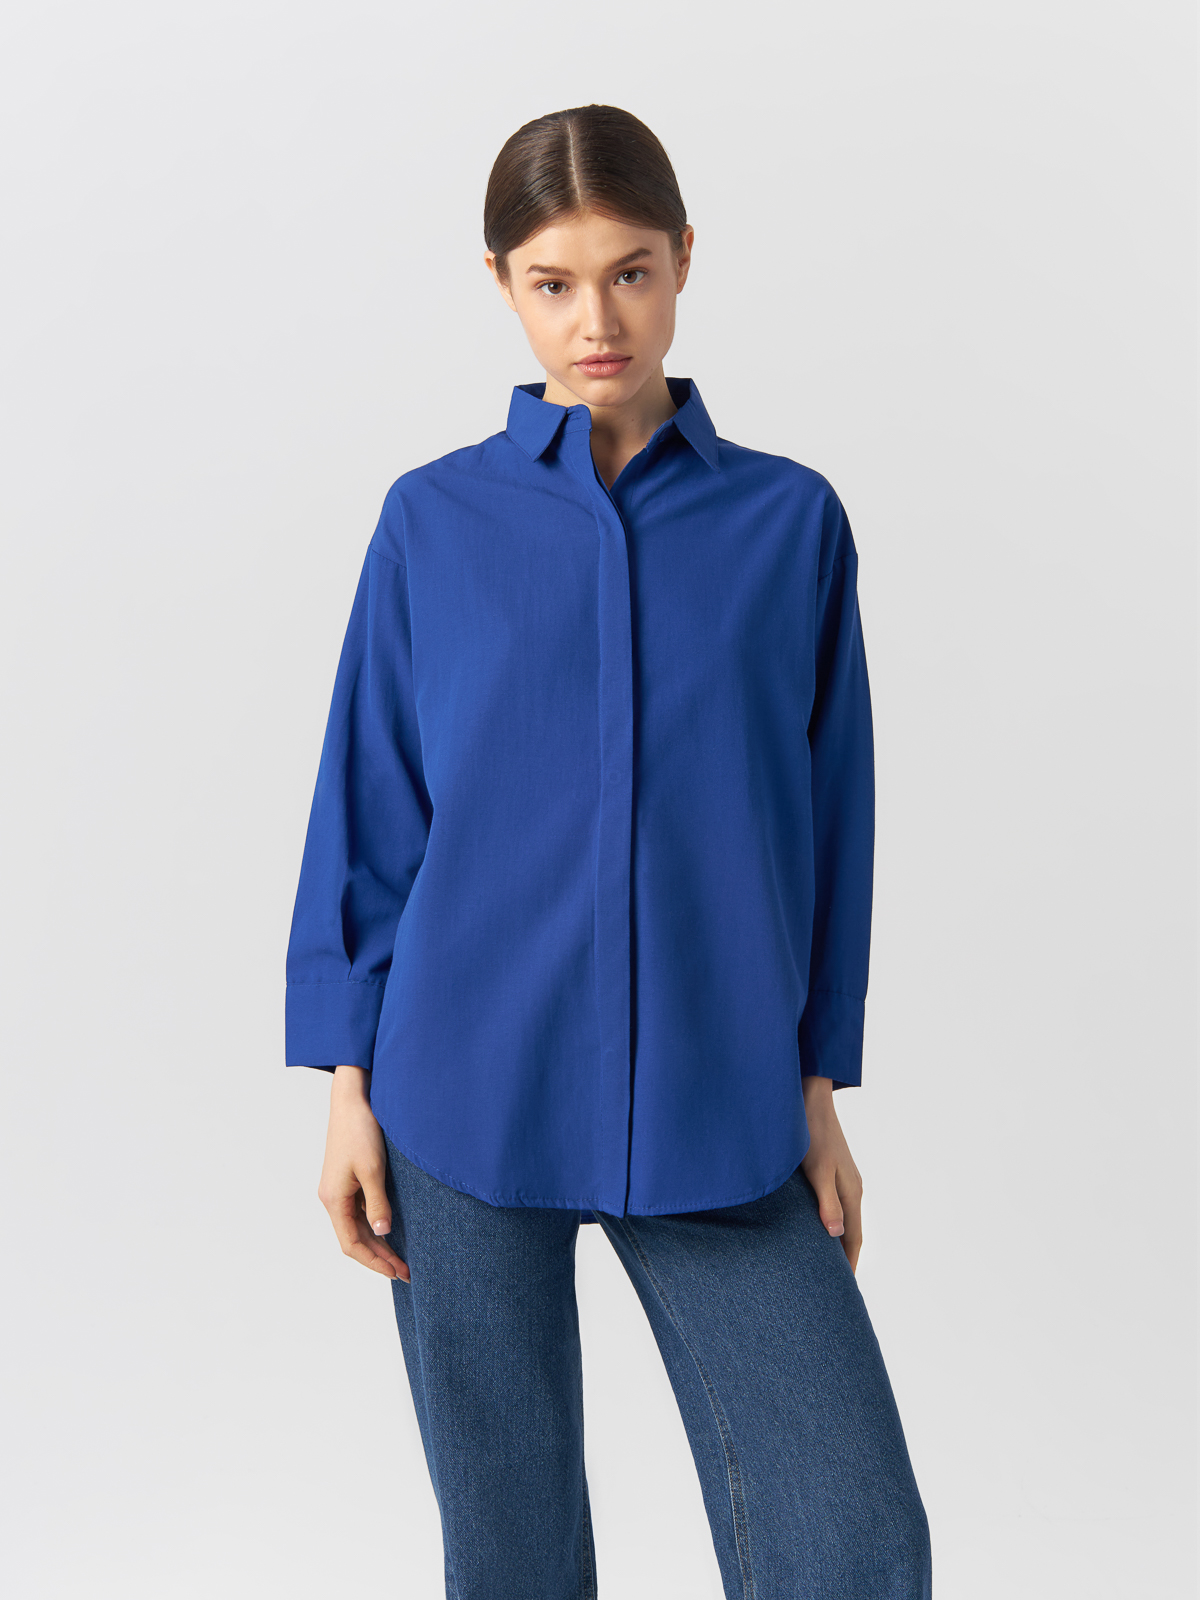 Рубашка женская Chezalou 416VGN2235 синяя M